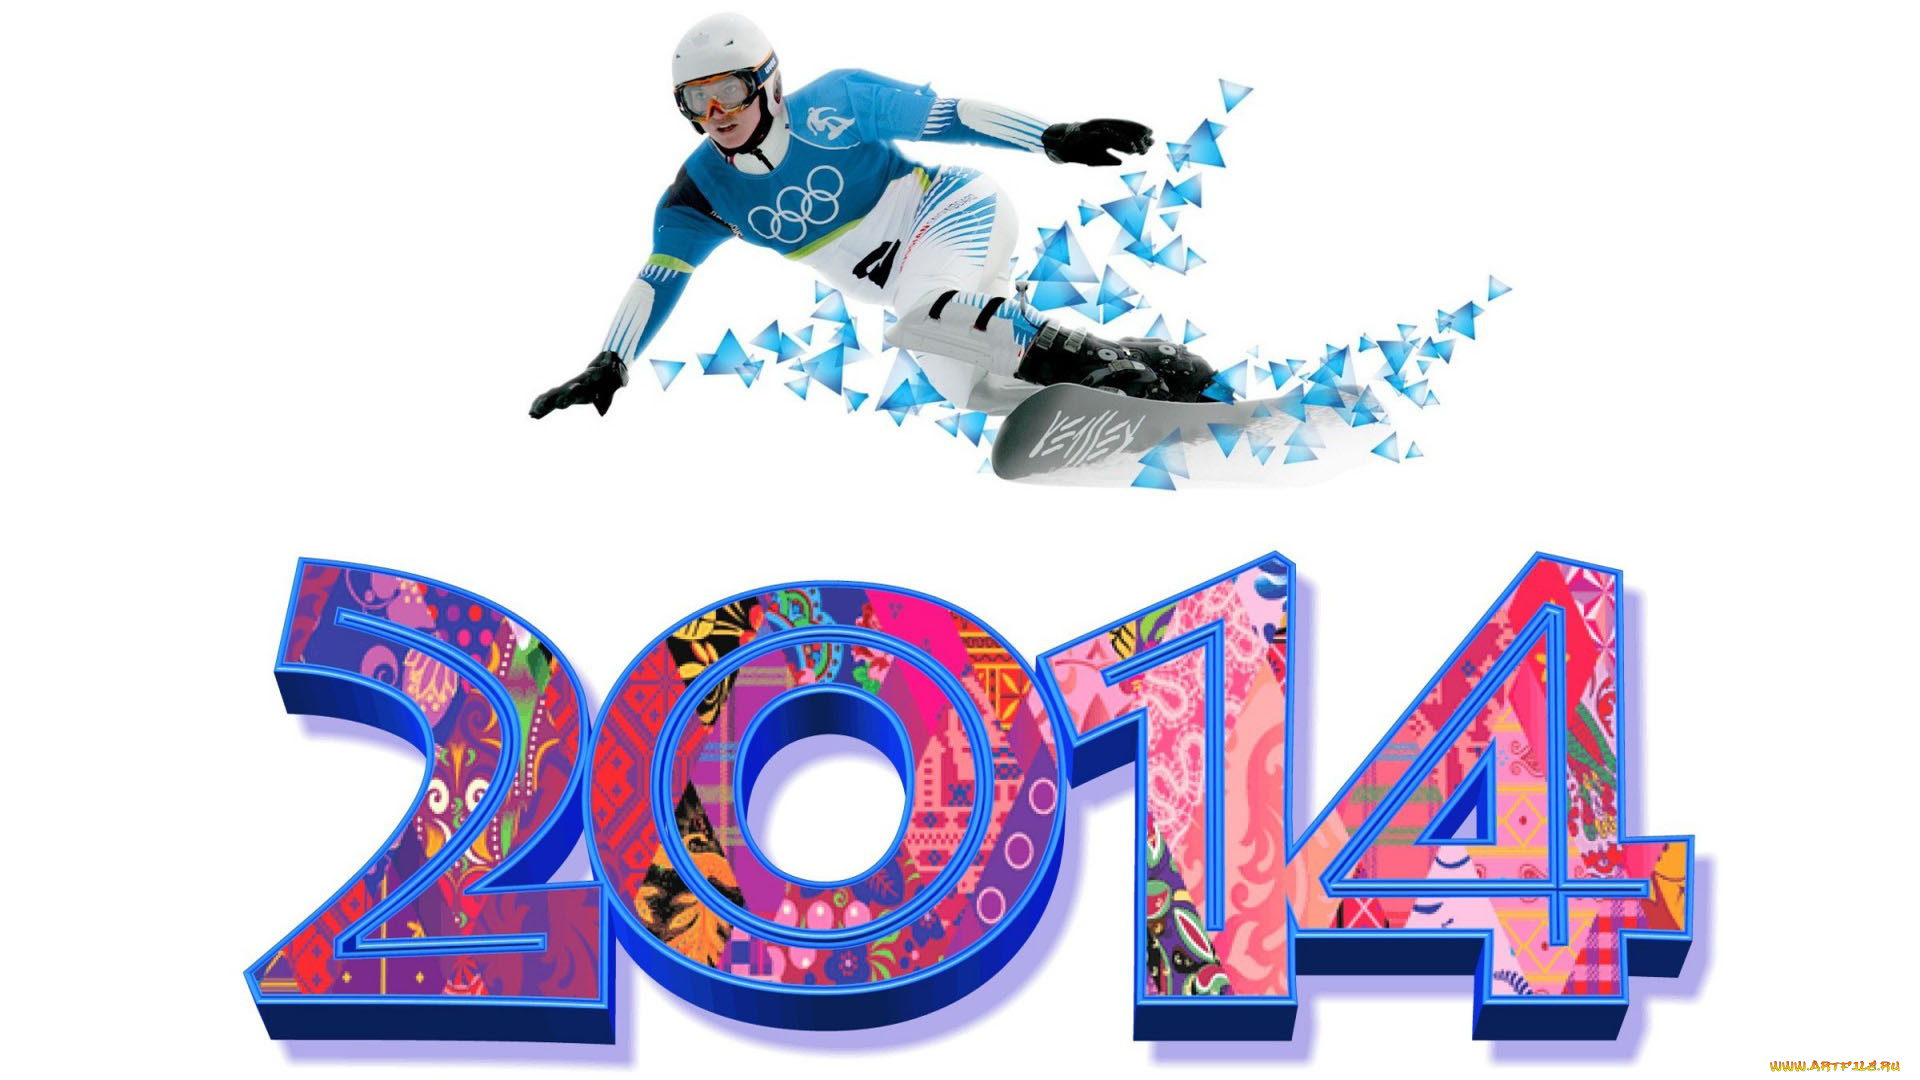 спорт, сноуборд, сноубордист, 2014, олимпиада, сочи, спортсмен